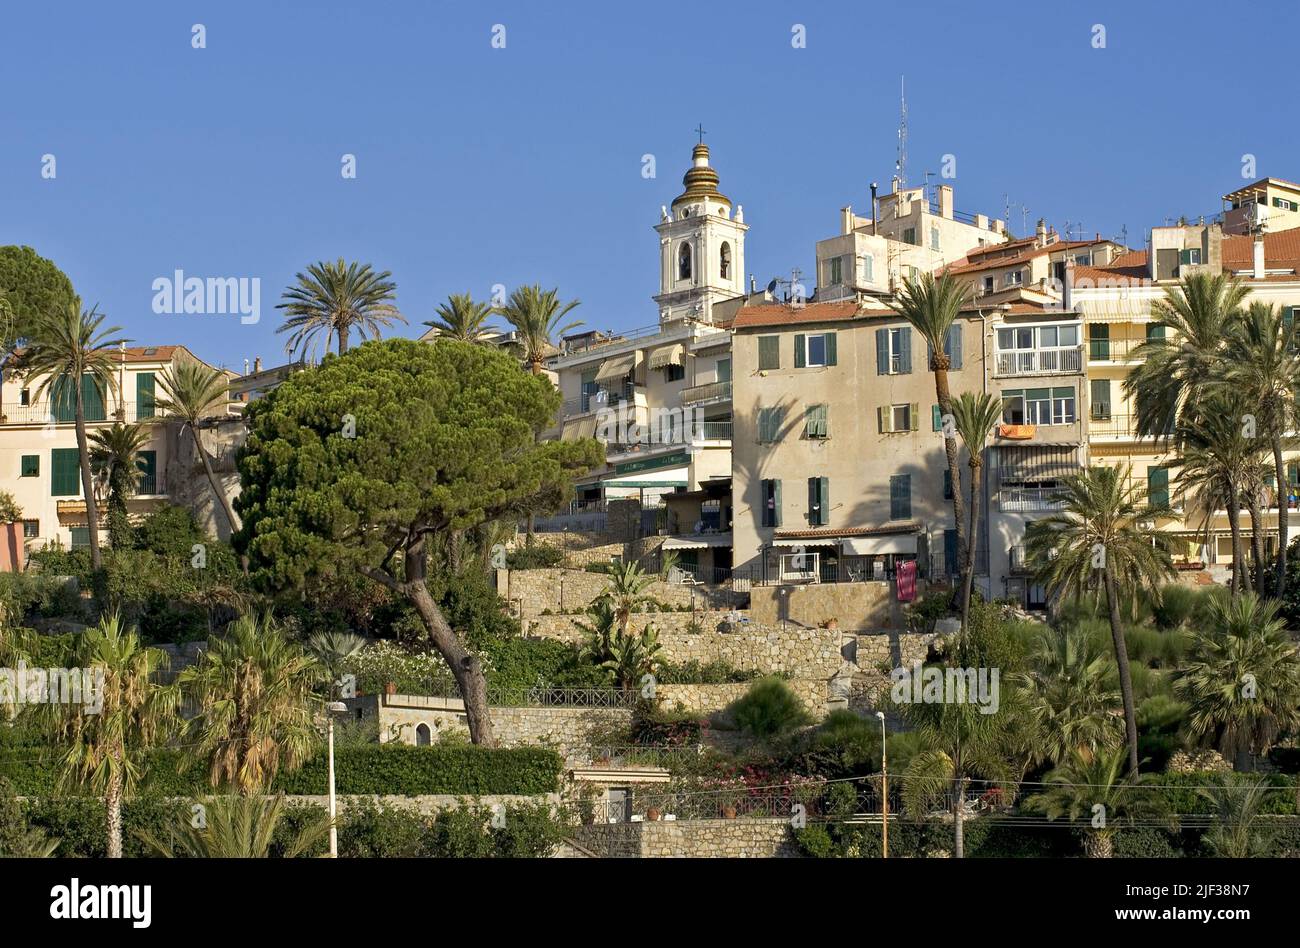 Vista de la ciudad vieja, Italia, Liguria, Bordighera Foto de stock